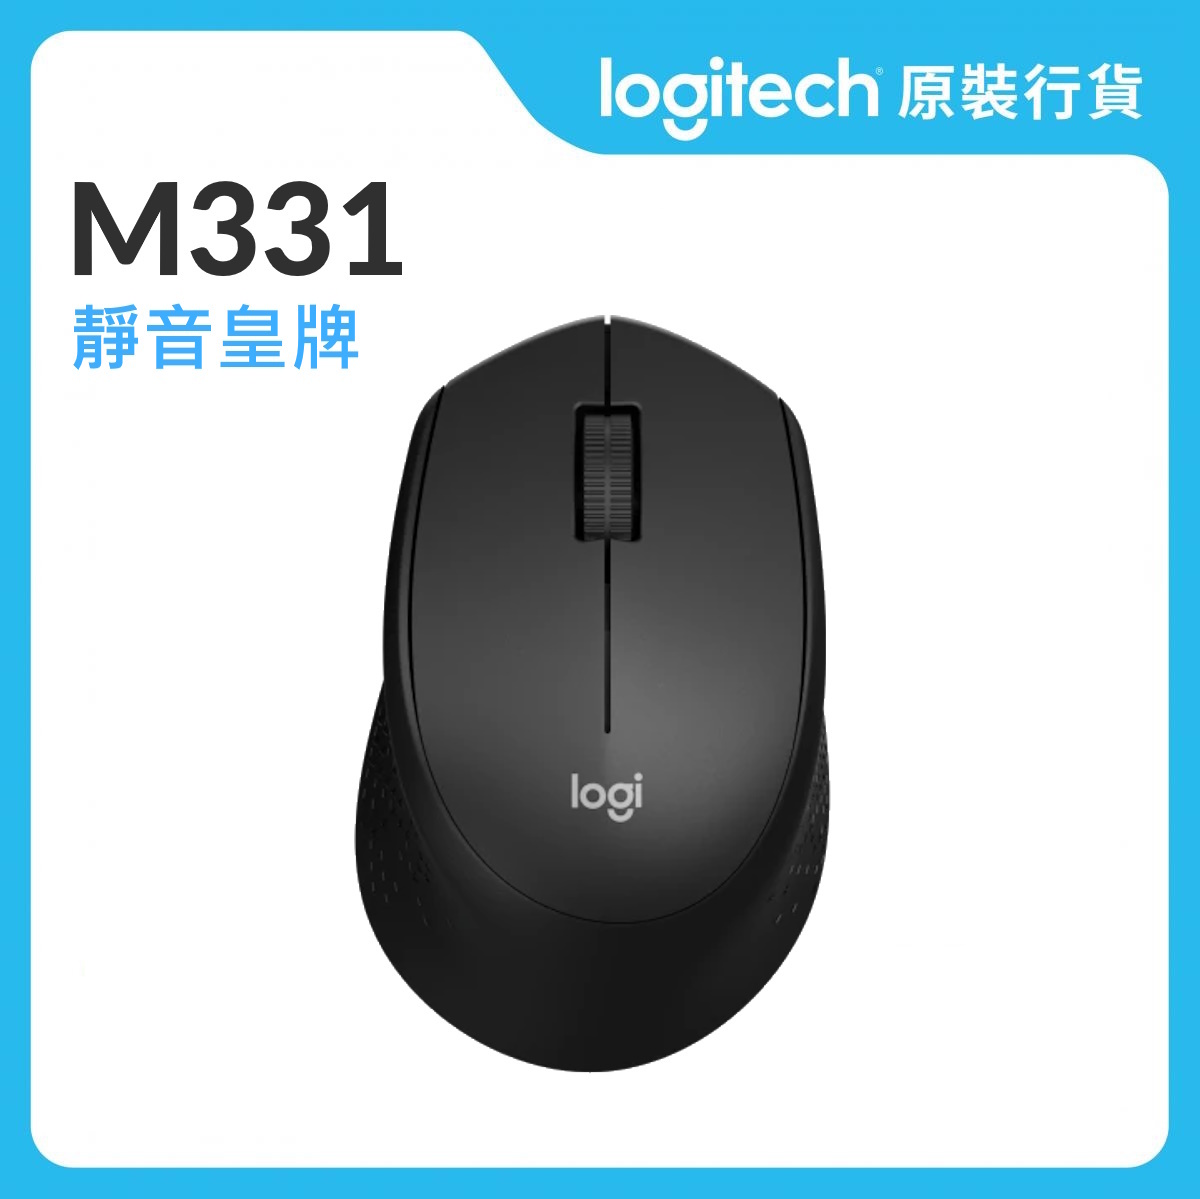 M331 SILENT - 黑色 - 靜音無線滑鼠 (910-004917)